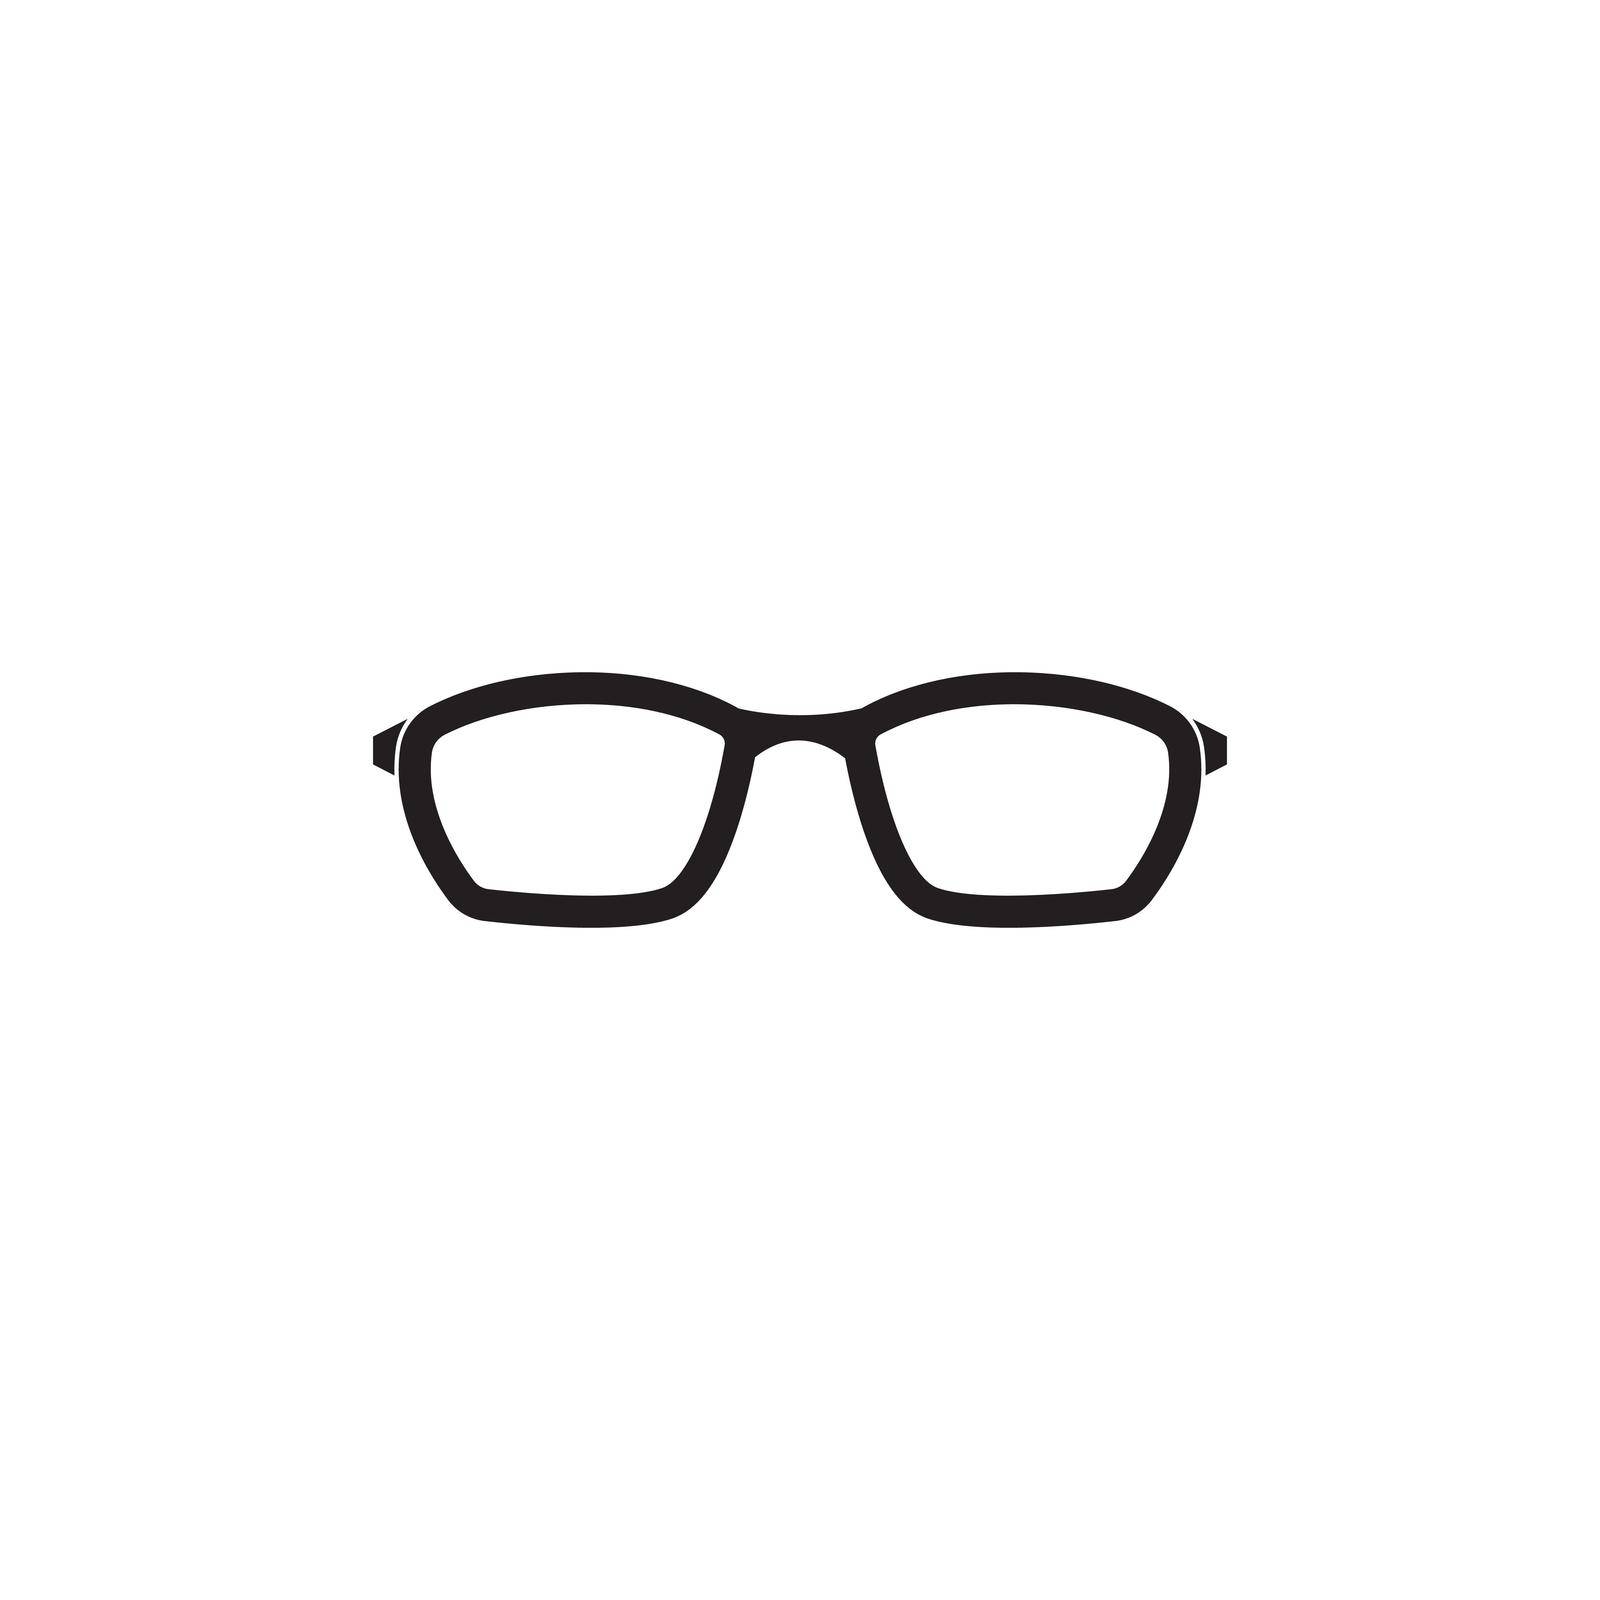 eyeglasses logo by rnking